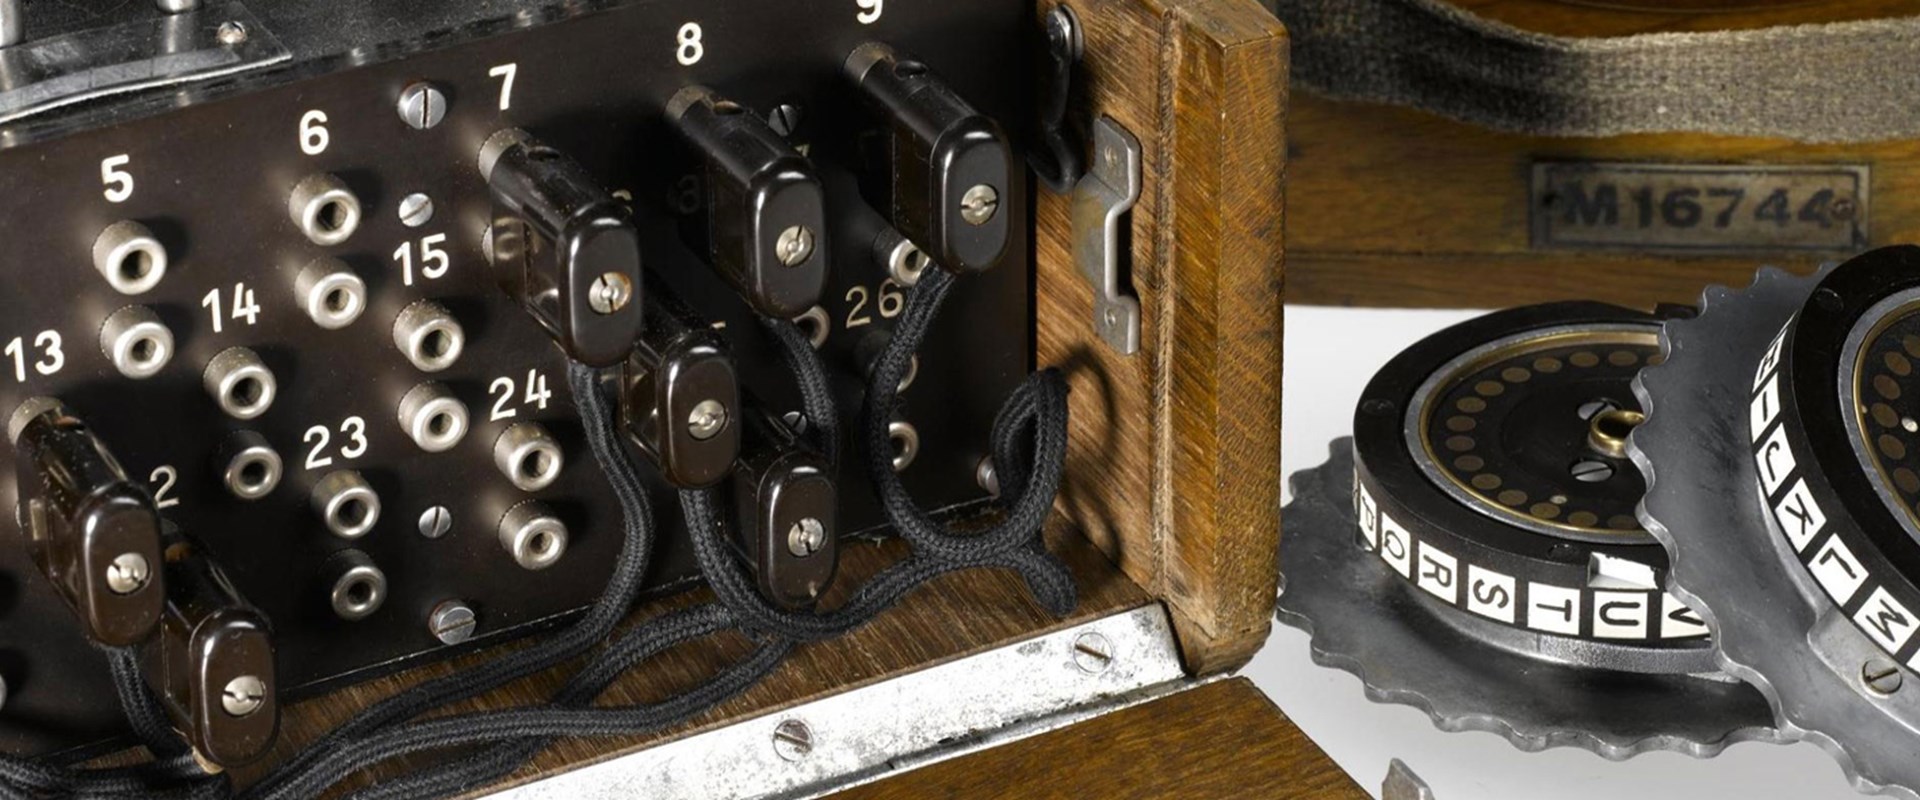 Enigma Detail Header